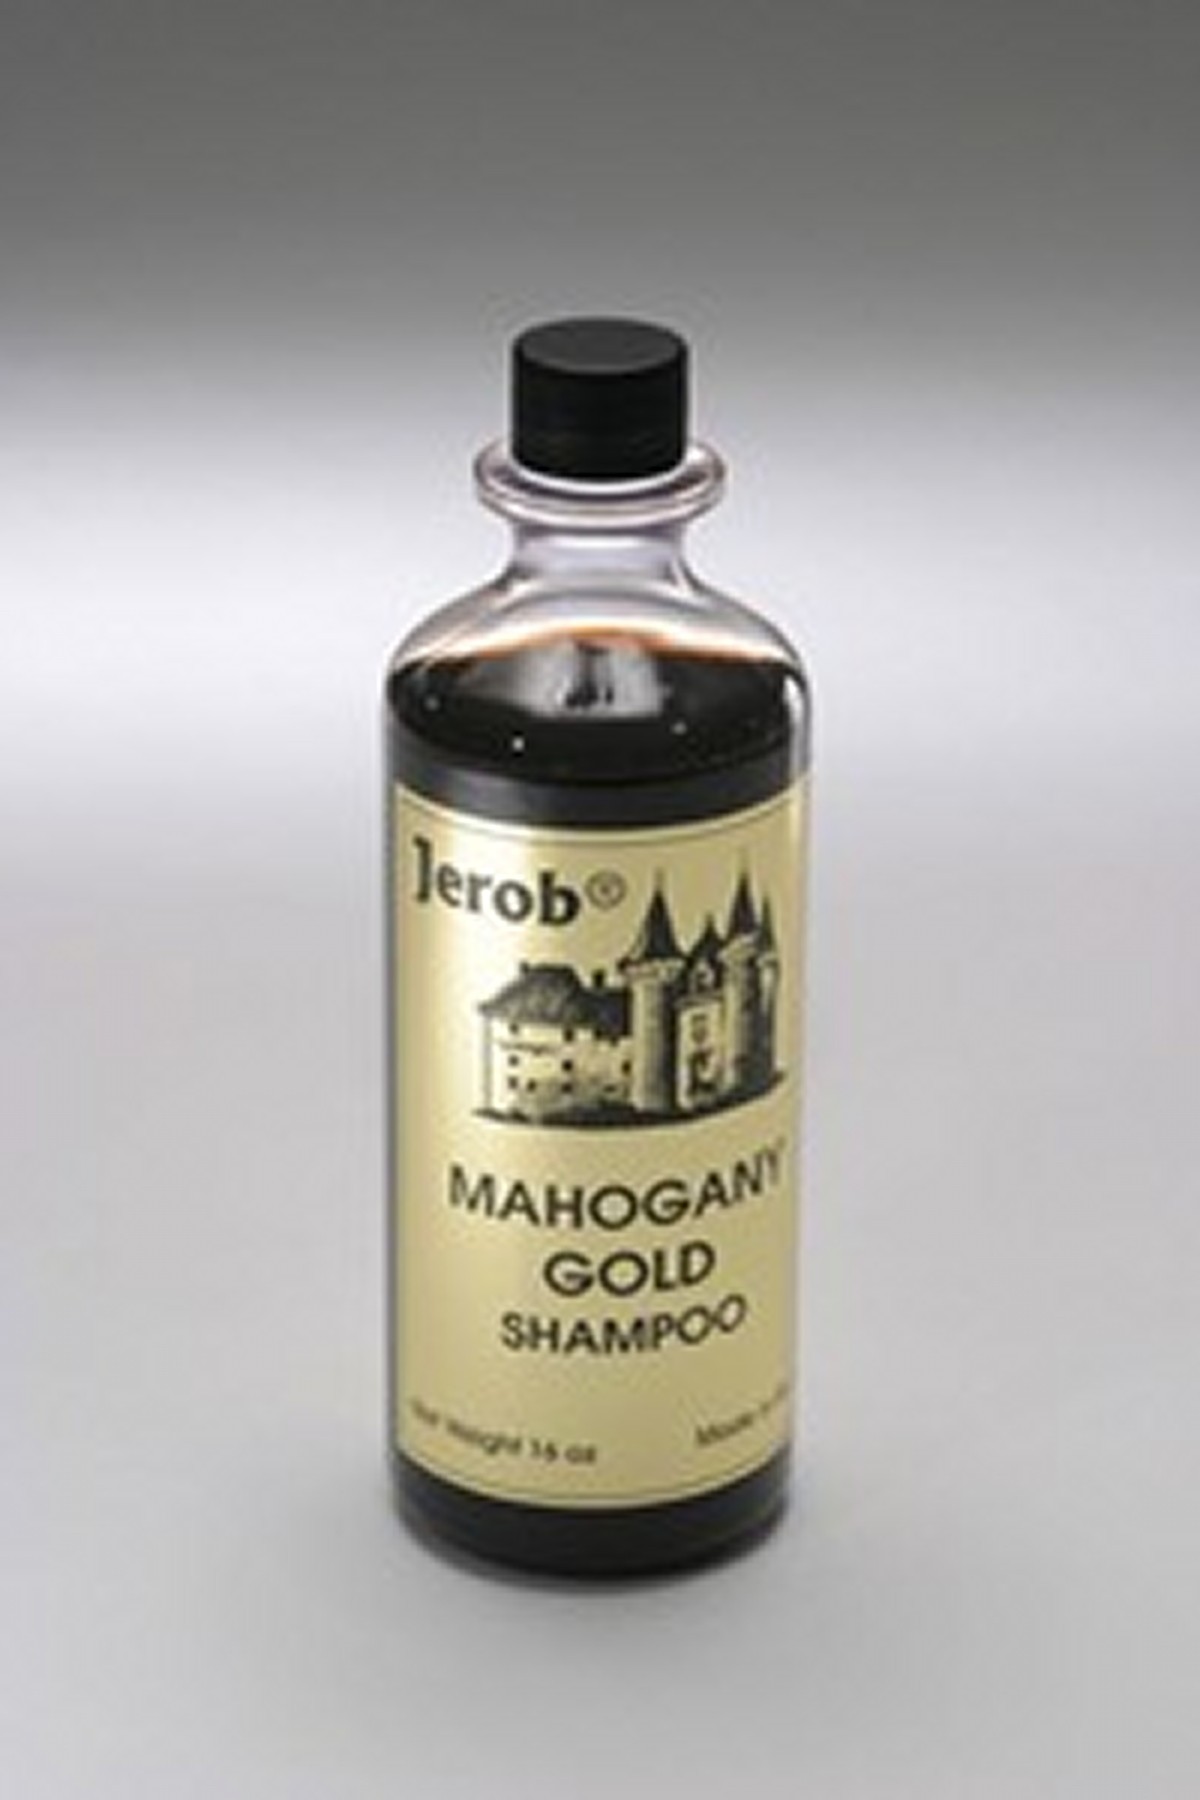 Jerob šampon Mahogany Gold 236 ml